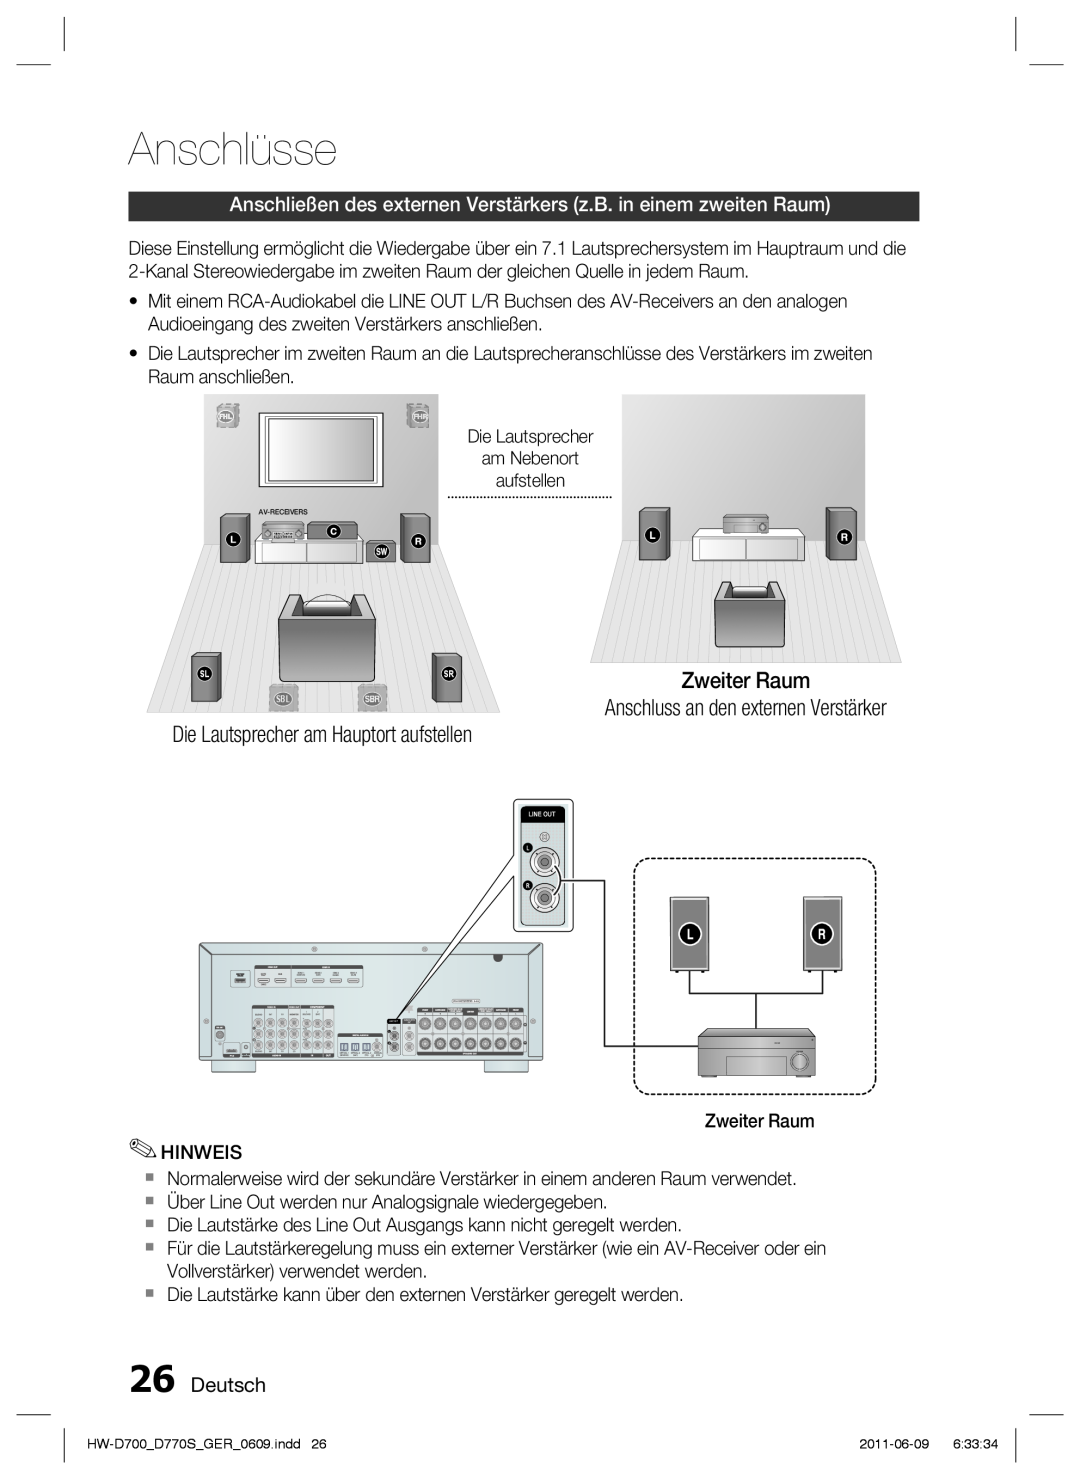 Samsung HW-D770S/EN Zweiter Raum Anschluss an den externen Verstärker, Die Lautsprecher am Hauptort aufstellen, Deutsch 